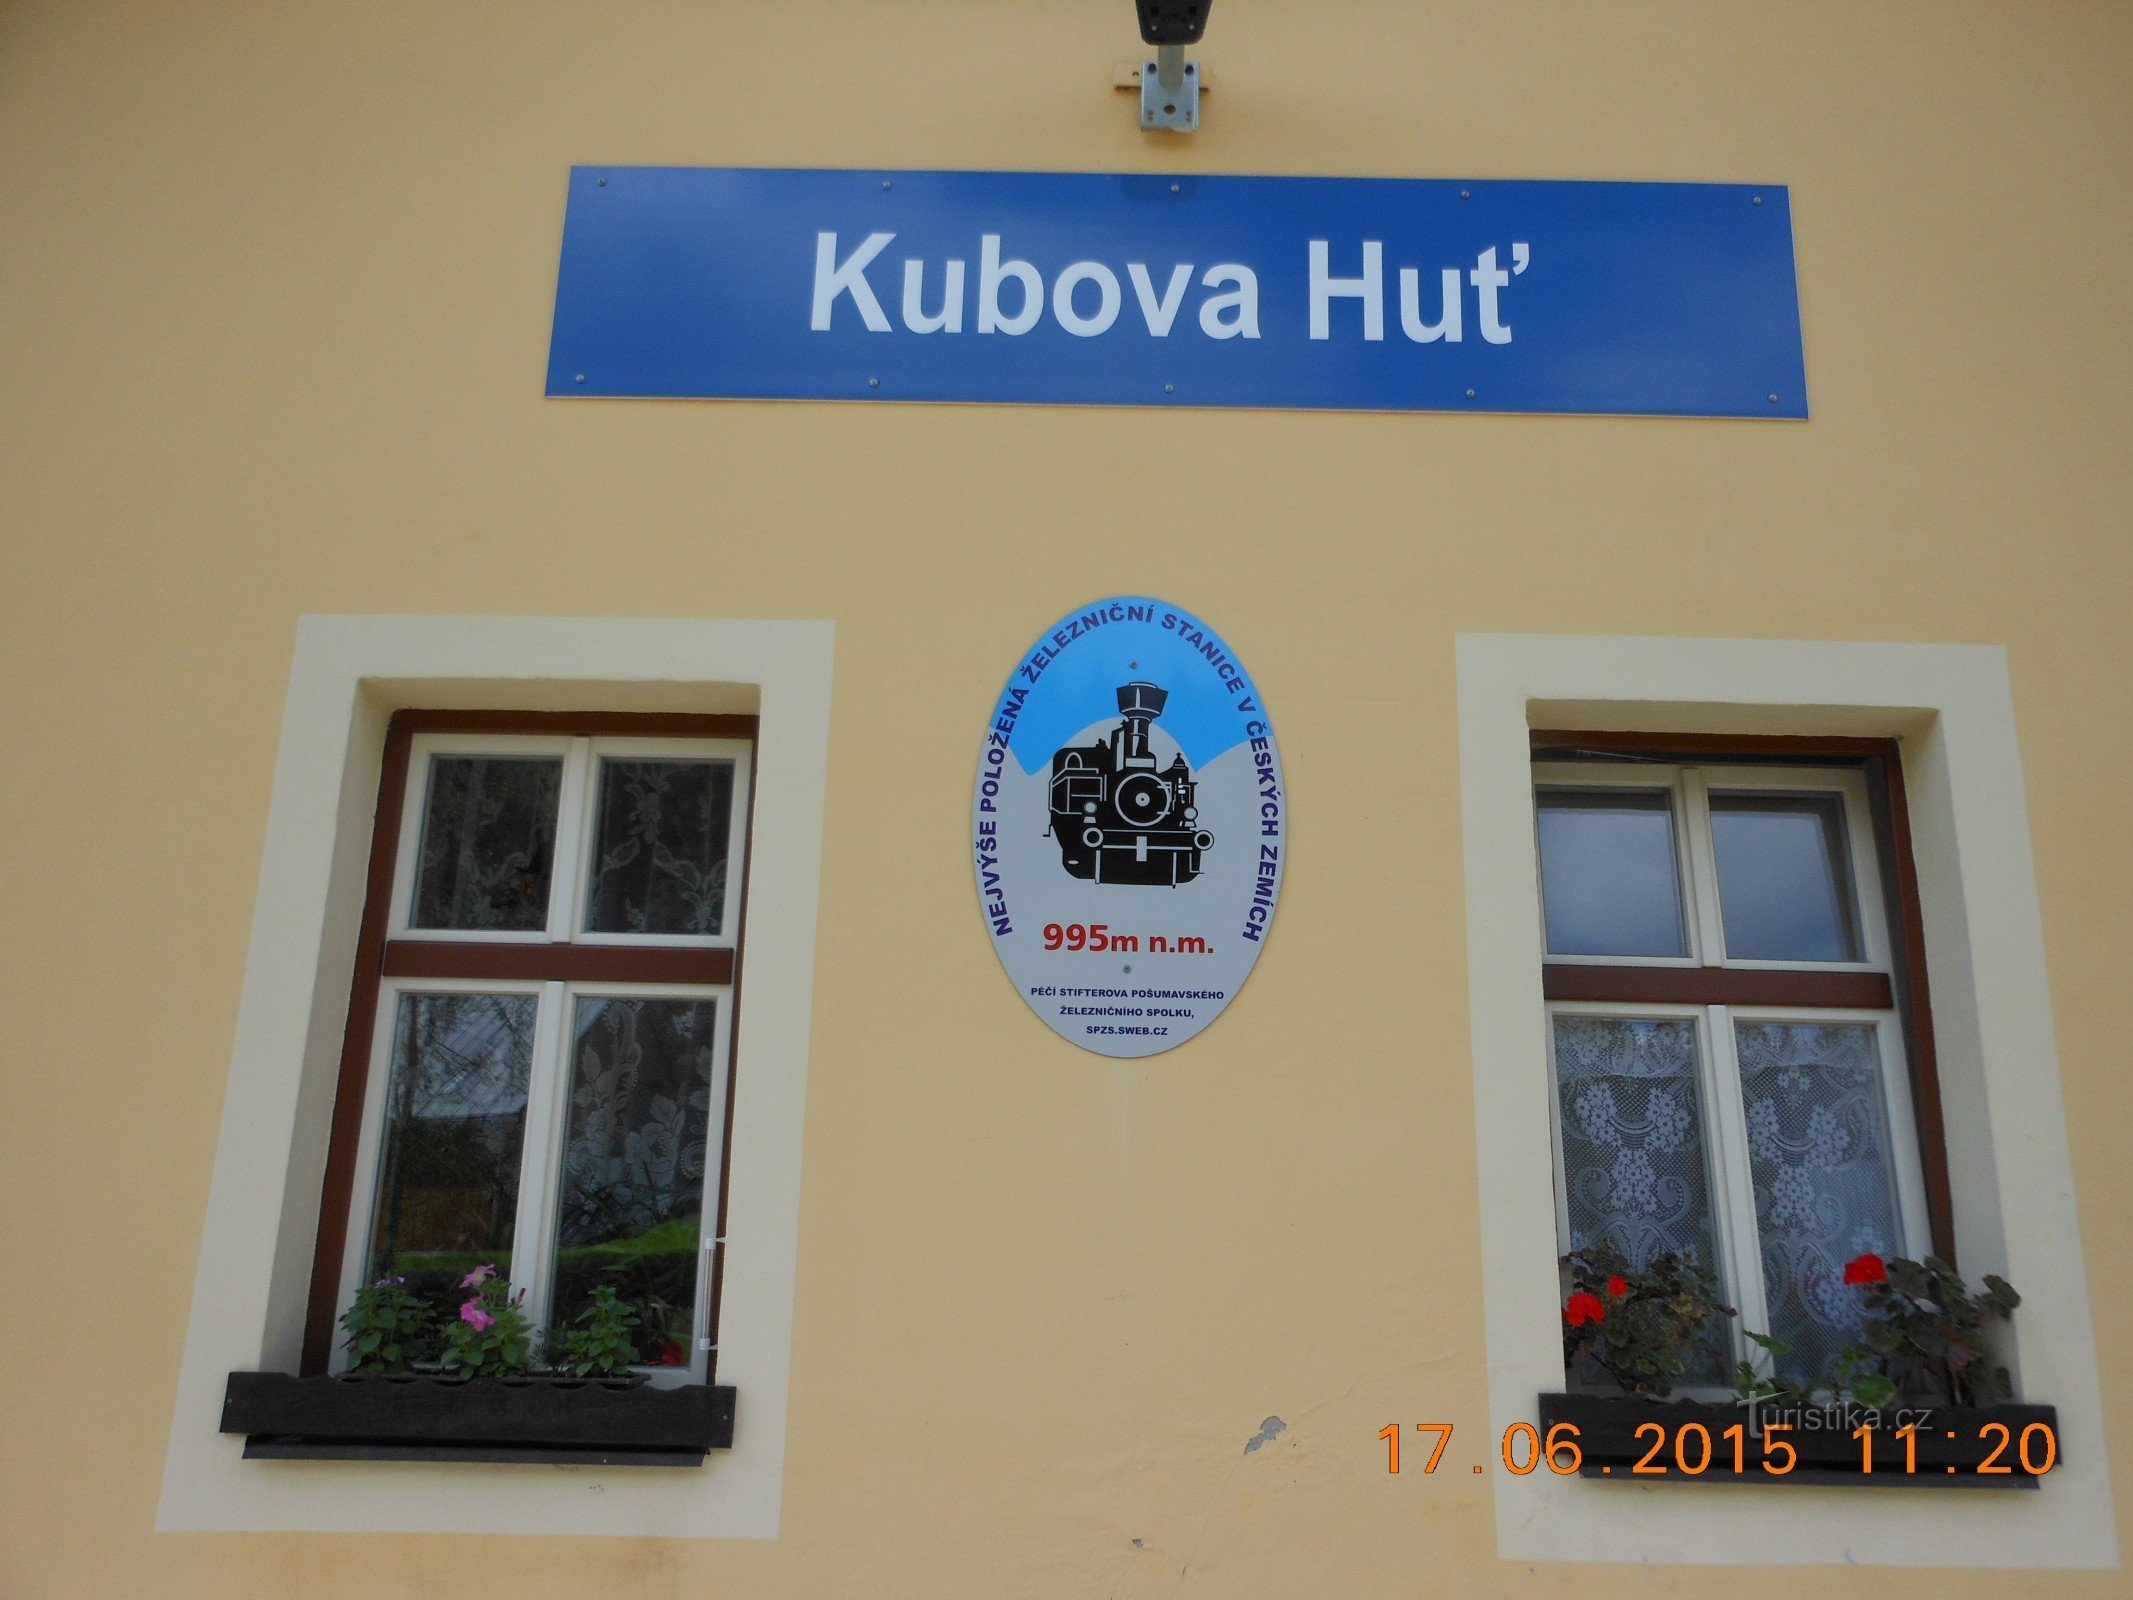 Kubova Huť - cea mai înaltă gară din Boemia